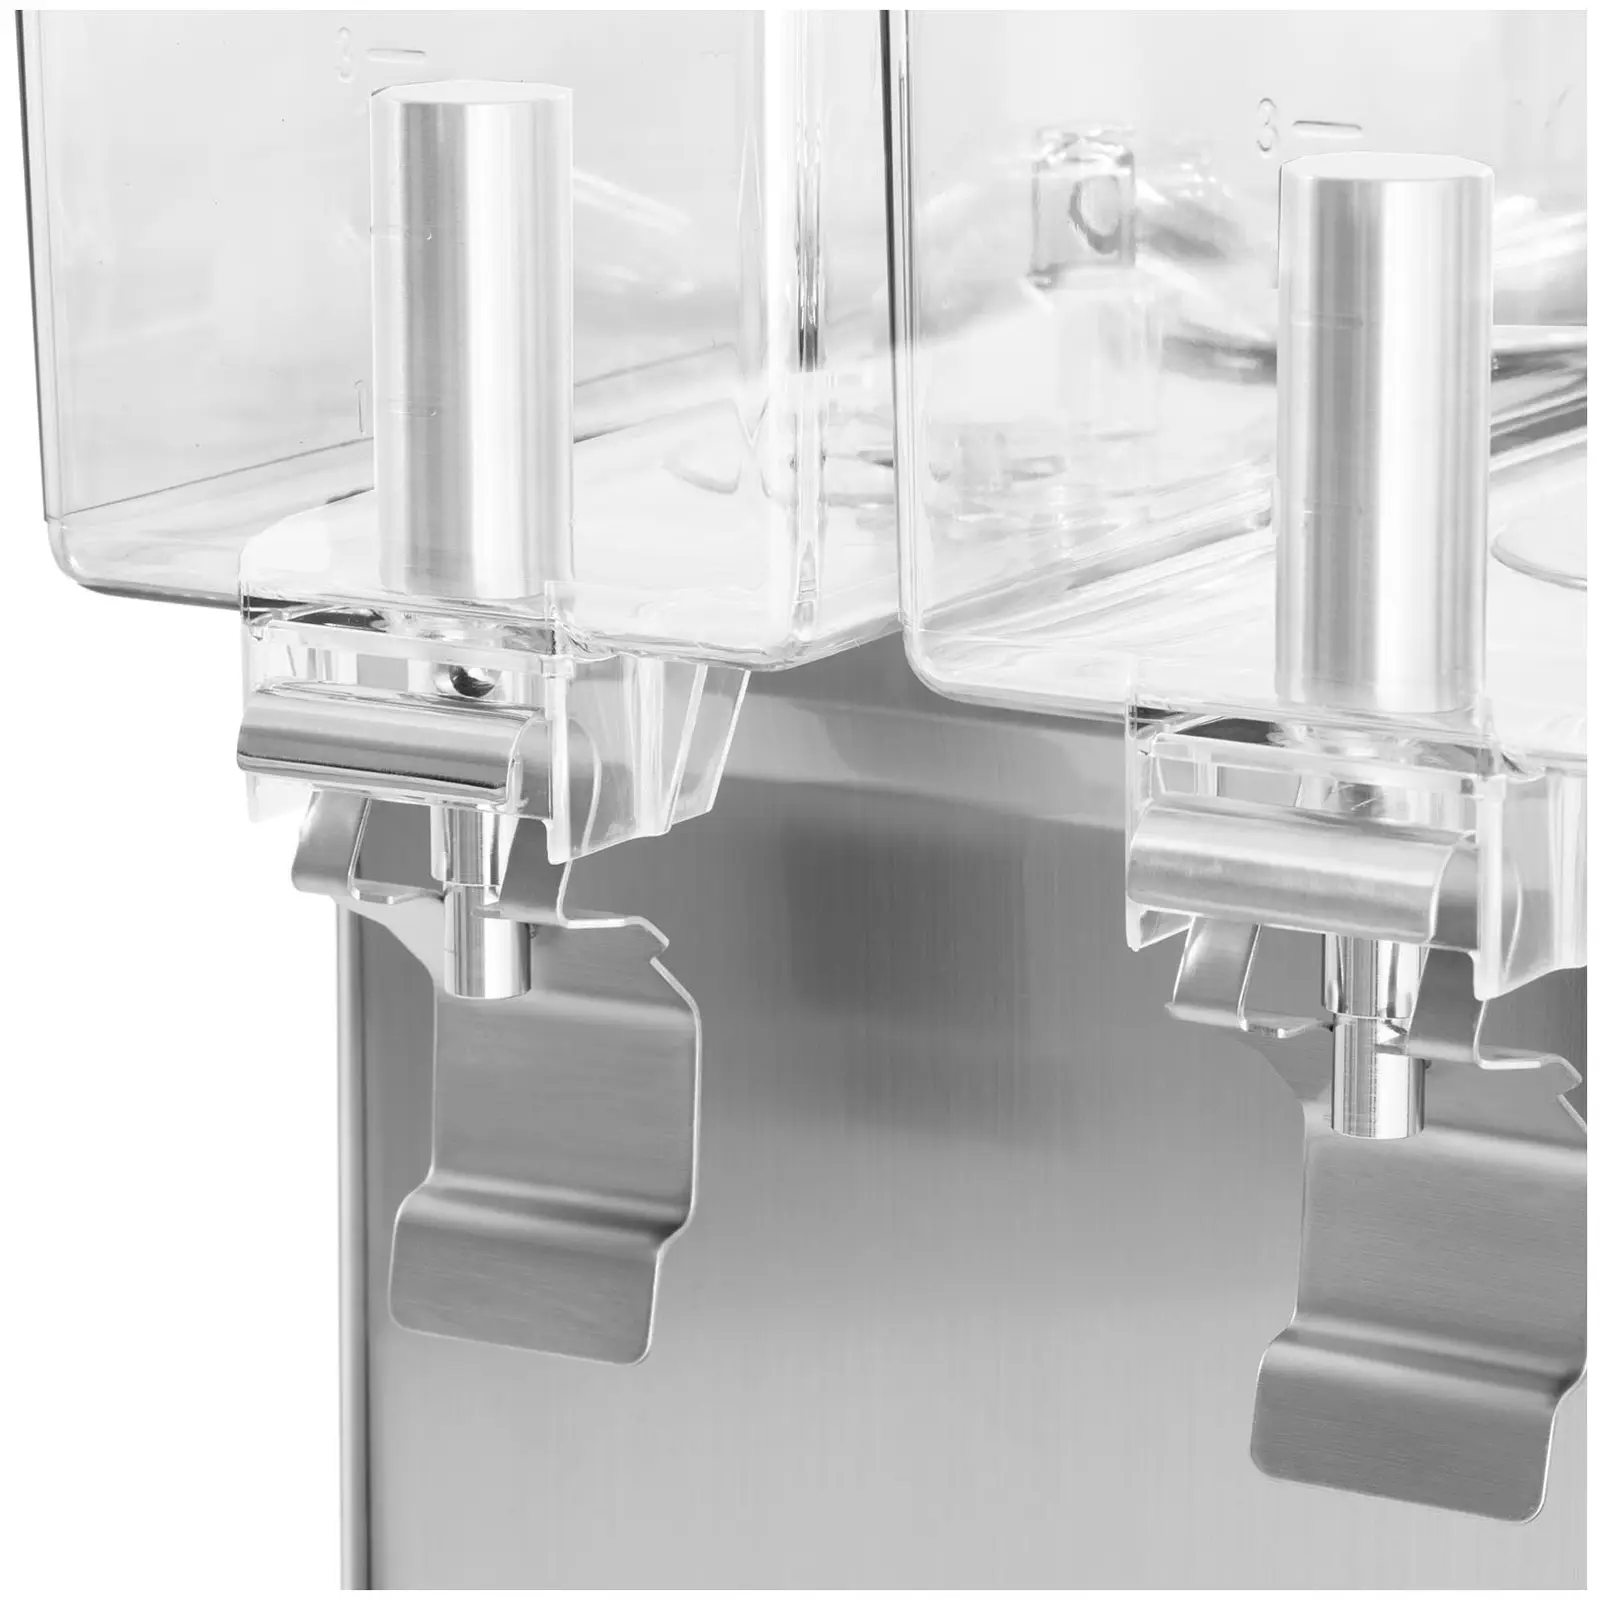 Juice Dispenser - 30 L - Royal Catering - cooling system